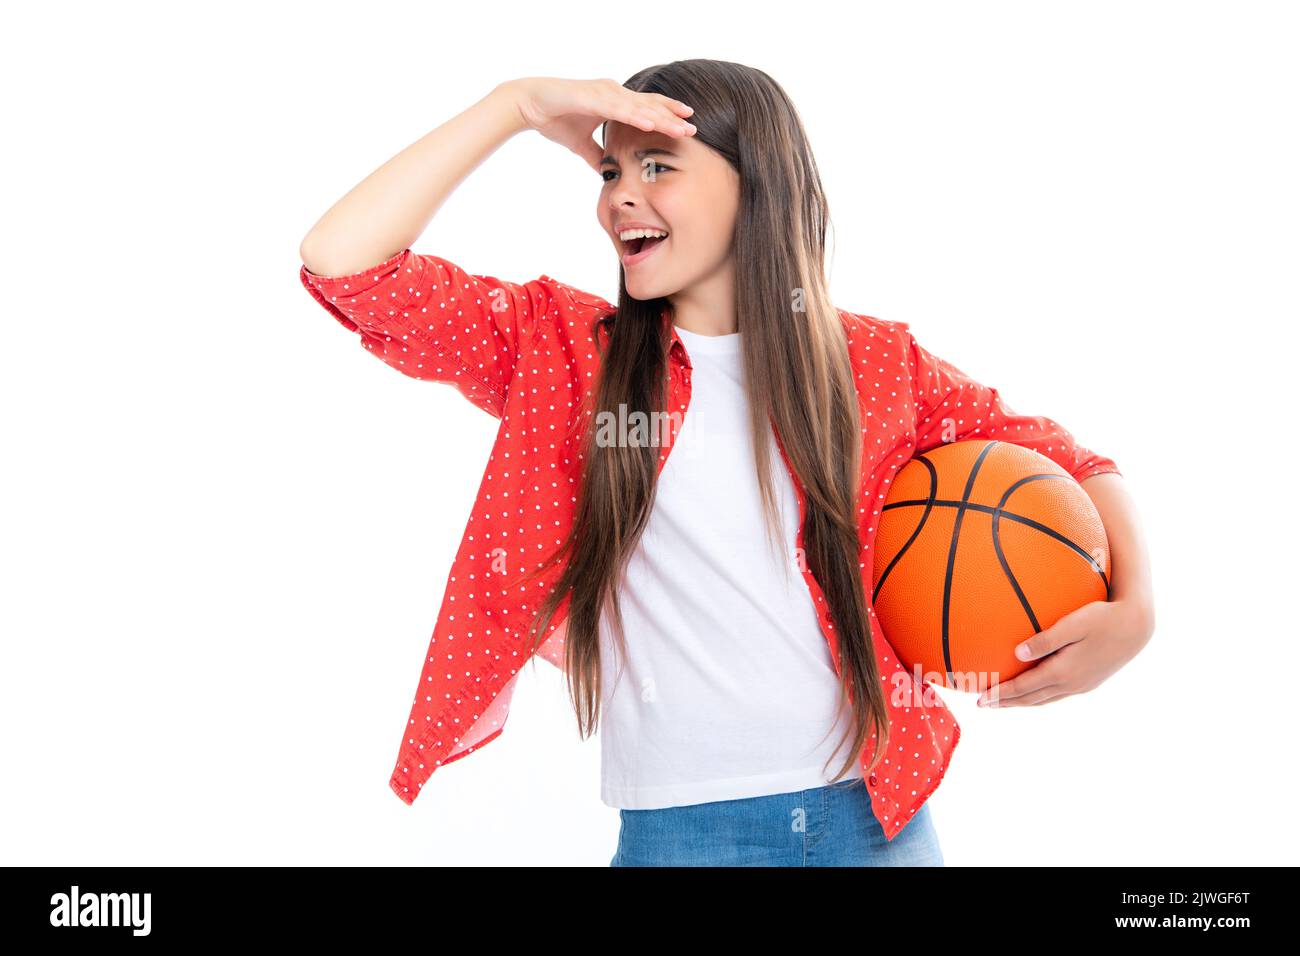 Teen Mädchen mit Basketball Ball isoliert auf weißem Hintergrund. Konzept von Kindersport, aktiver Lebensstil, Gesundheit, Teamspiel, Hobby. Portrait of emotional Stockfoto